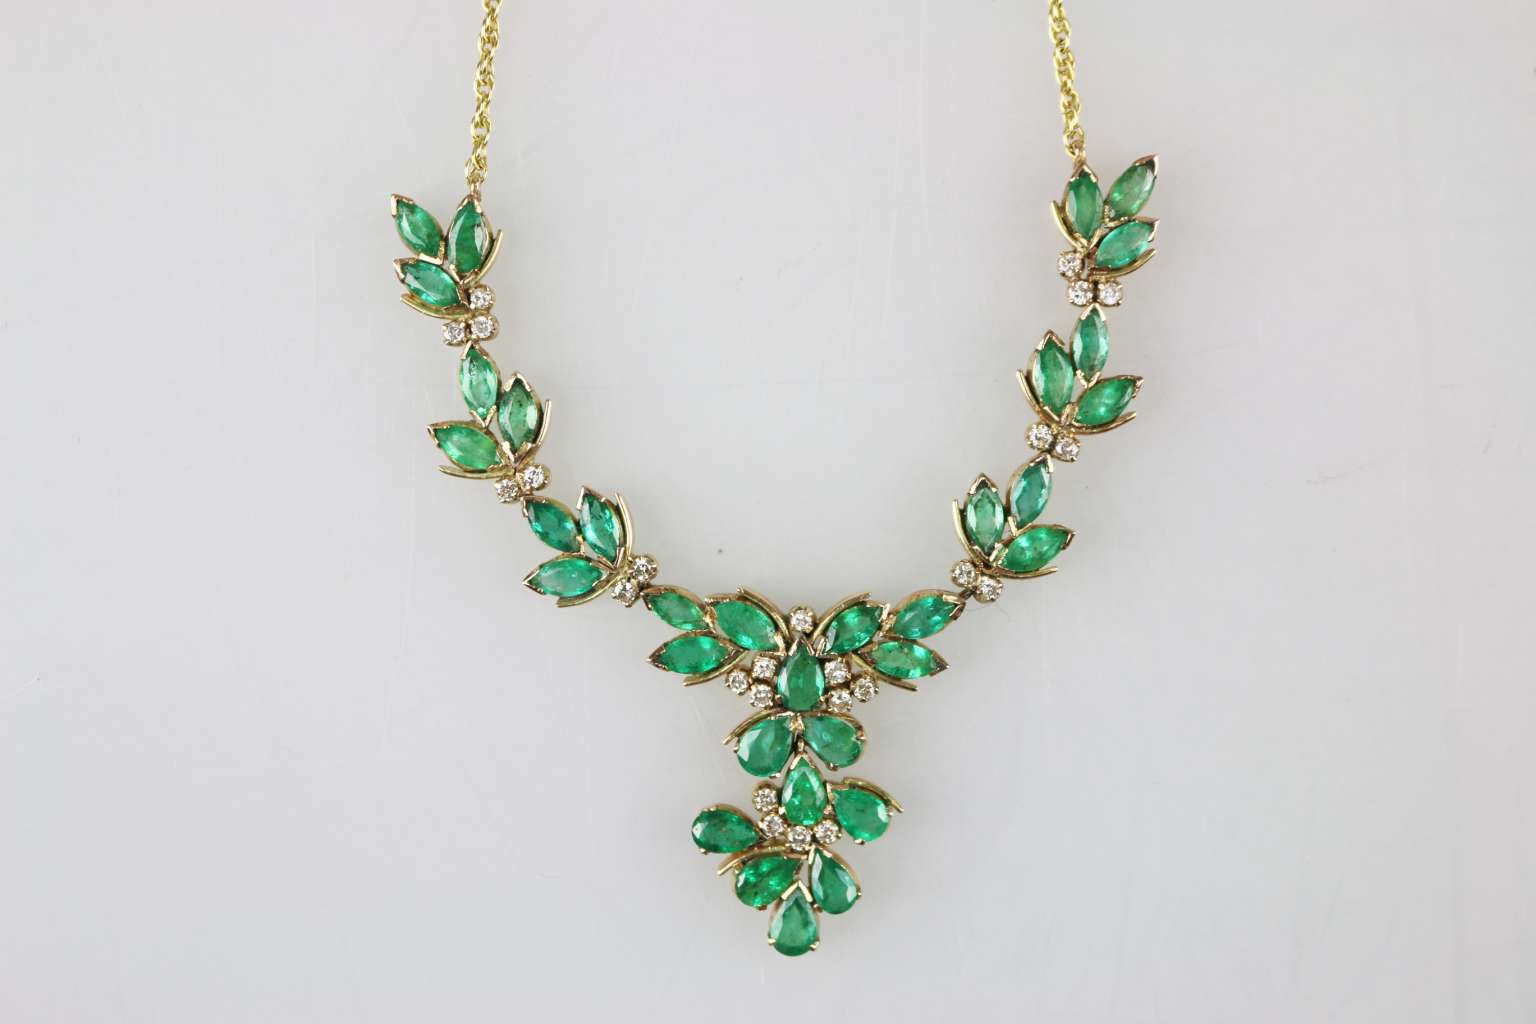 Halskette mit grünen Steinen - Image 2 of 3